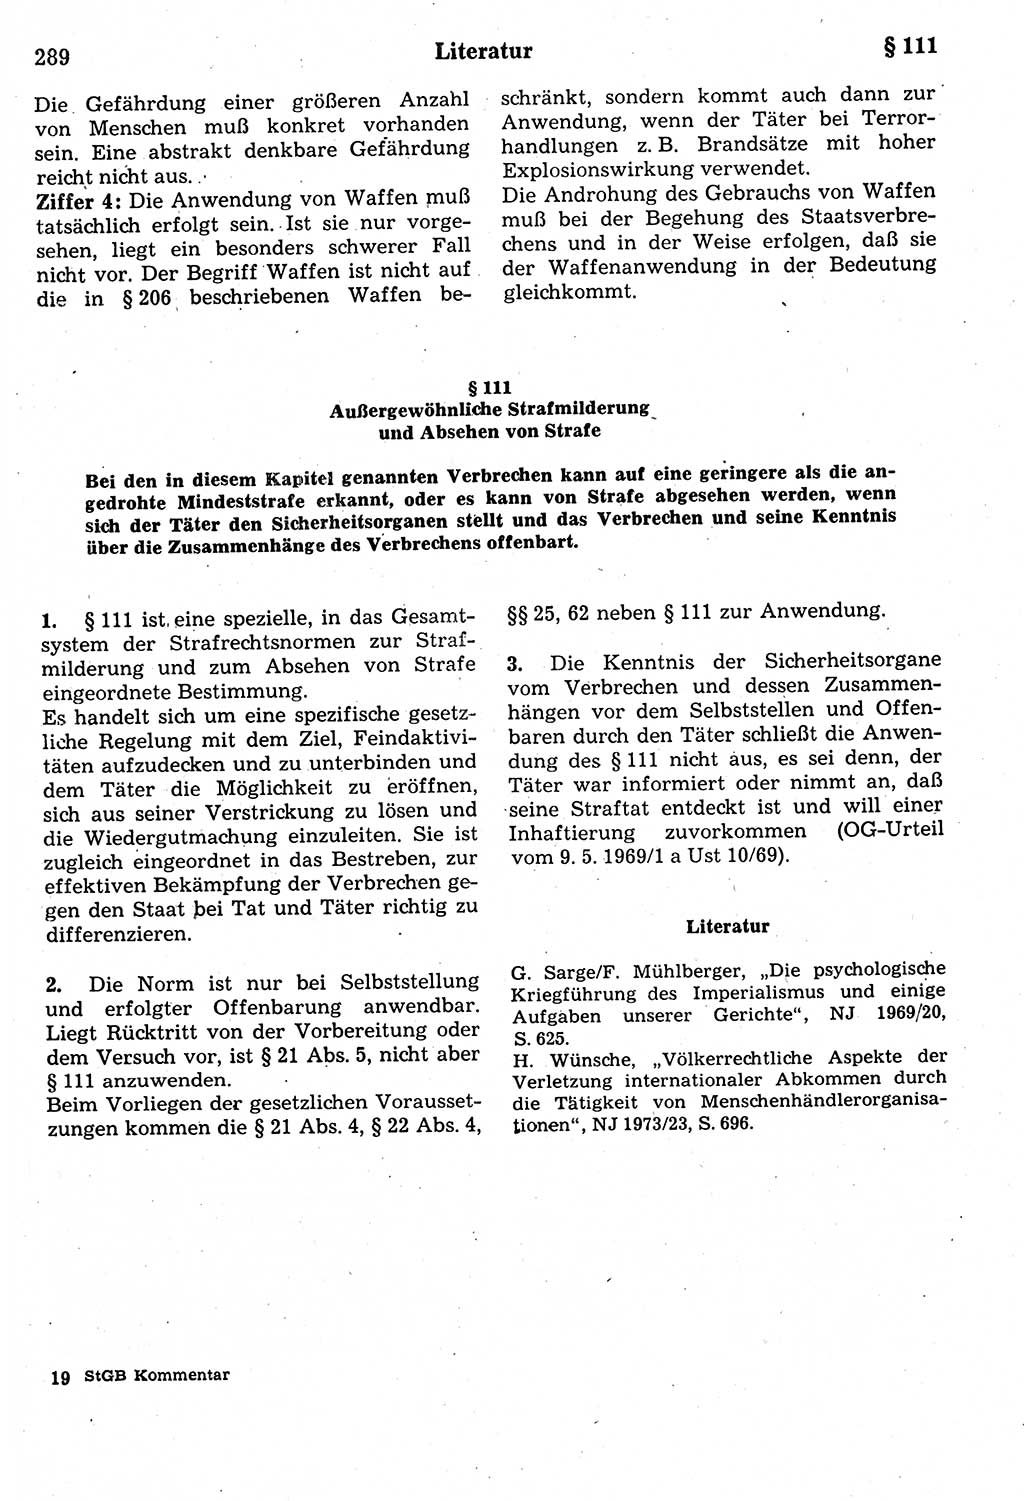 Strafrecht der Deutschen Demokratischen Republik (DDR), Kommentar zum Strafgesetzbuch (StGB) 1987, Seite 289 (Strafr. DDR Komm. StGB 1987, S. 289)